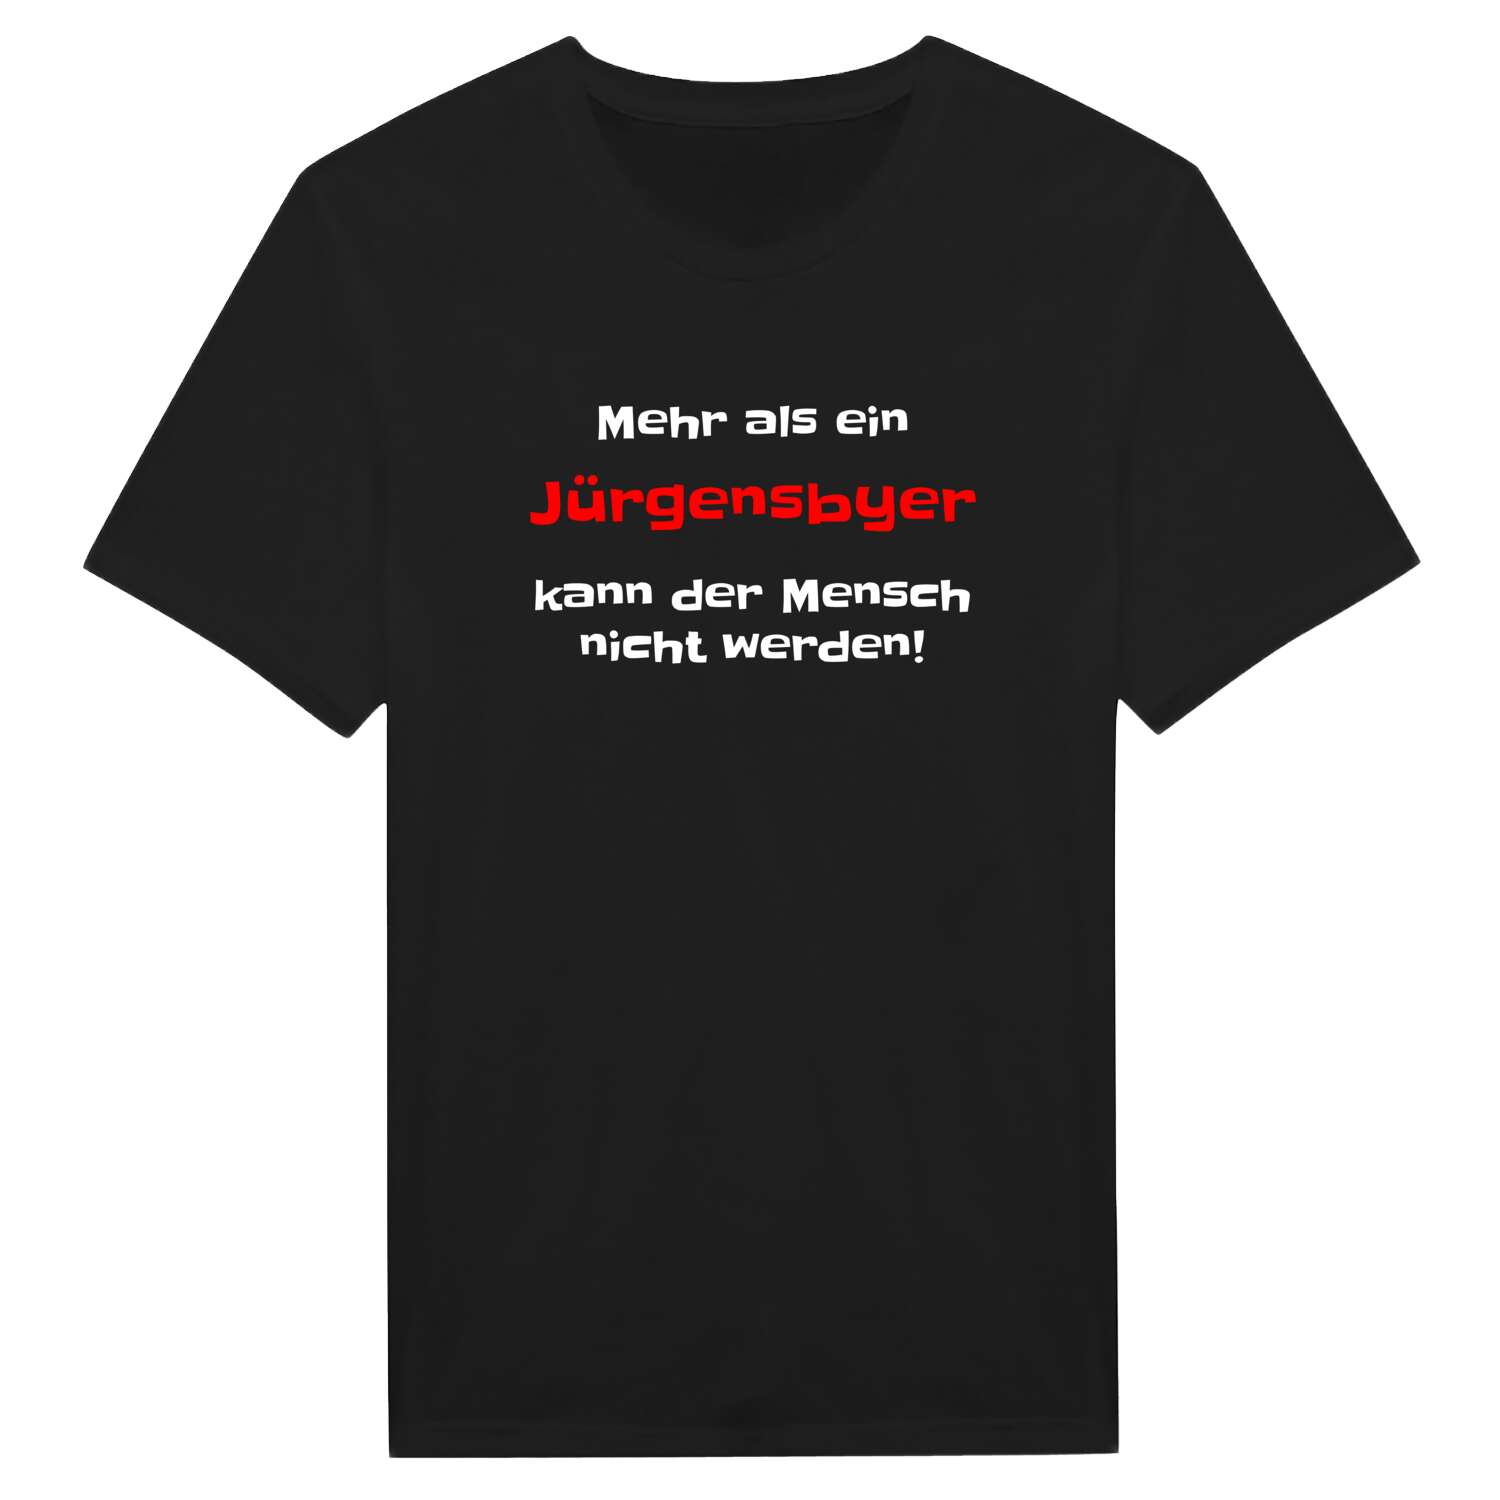 Jürgensby T-Shirt »Mehr als ein«